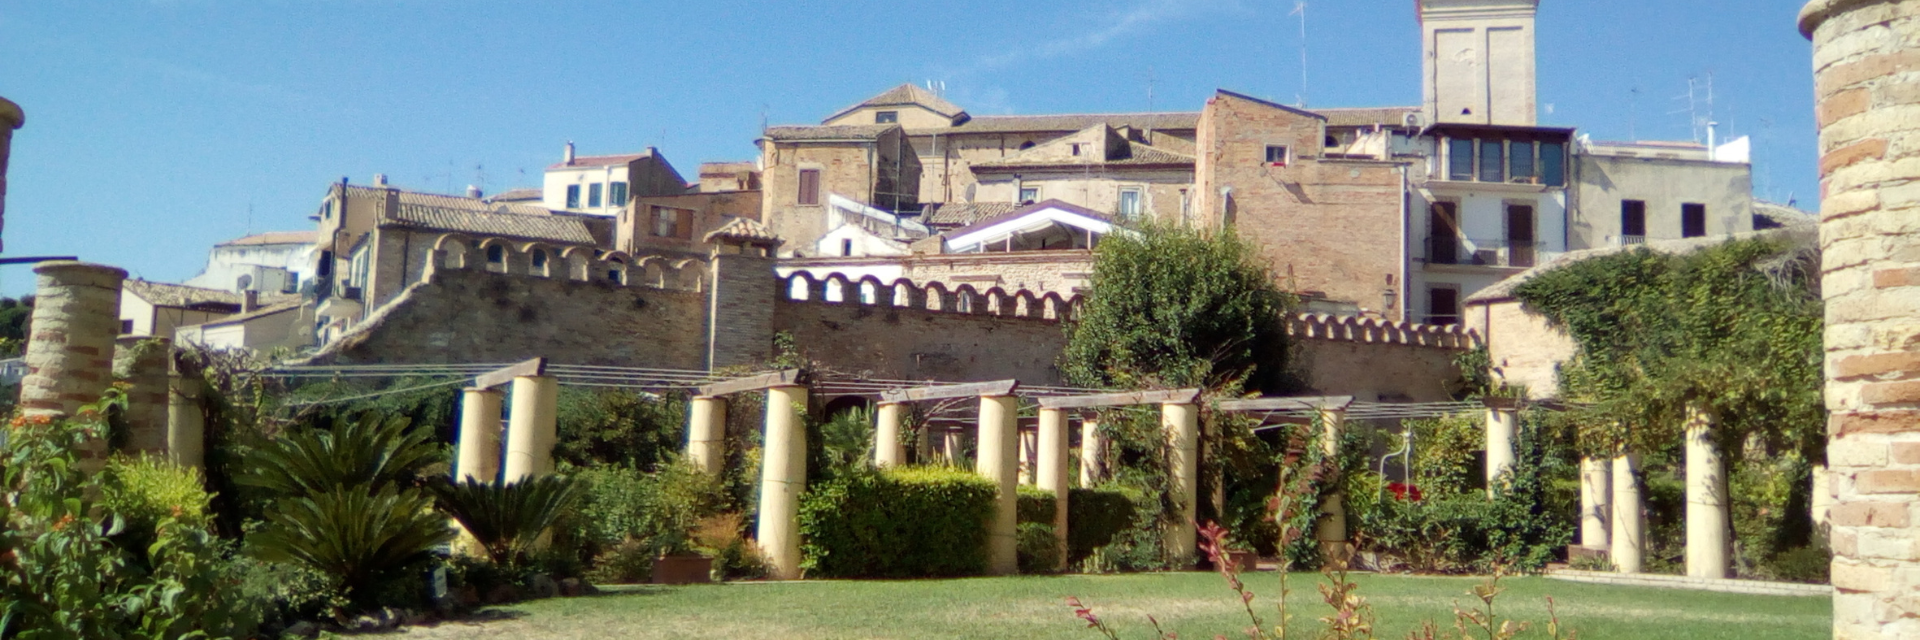 Giardino Palazzo d'Avalos